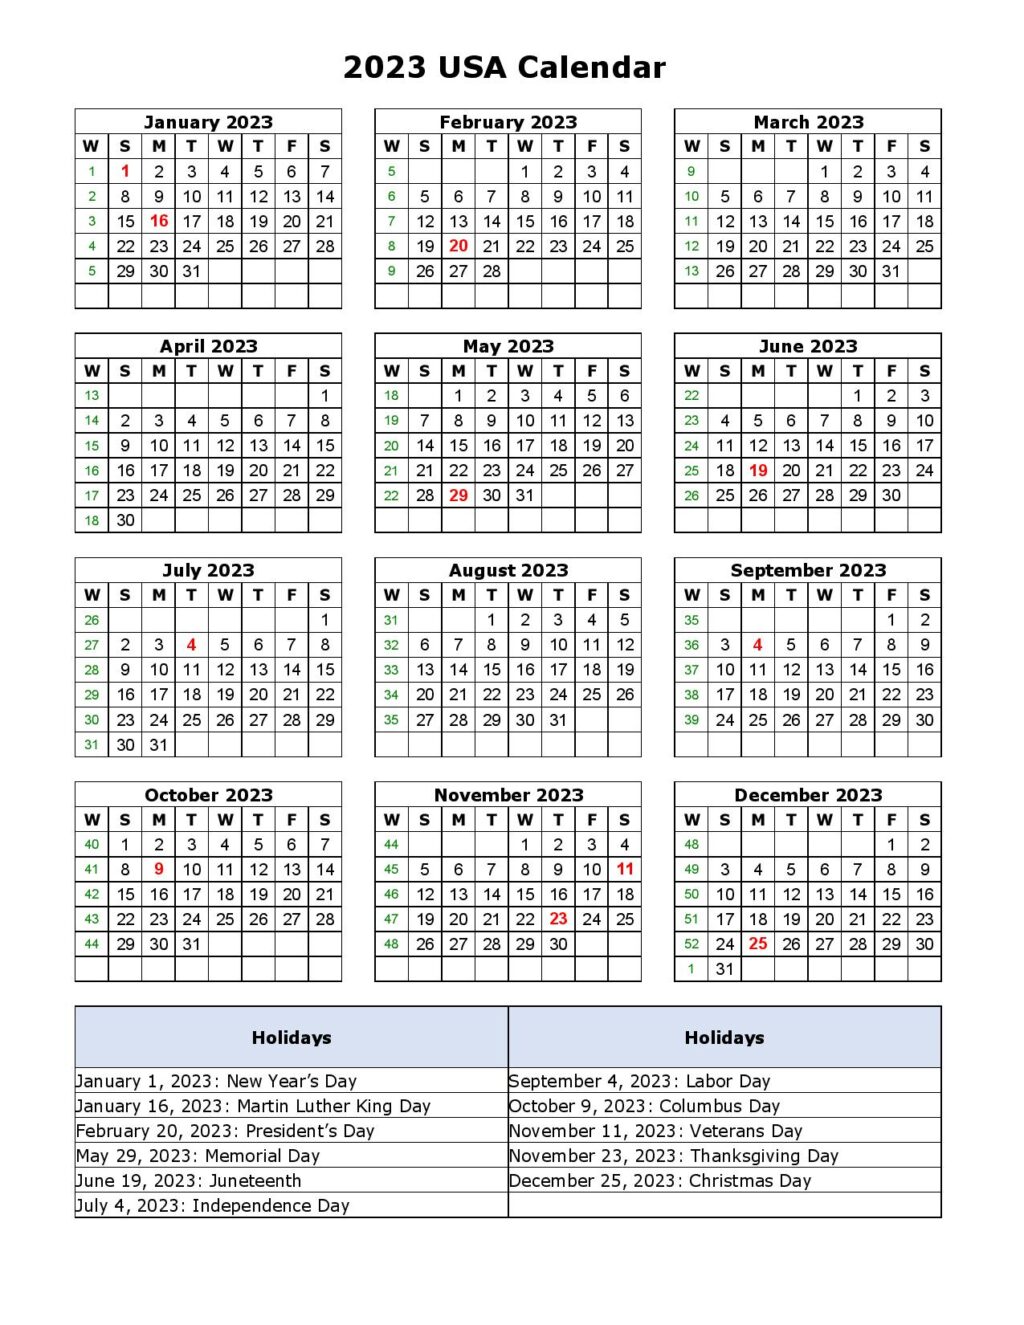 2023 USA Calendar with Holidays - Printable Template - Printable ...